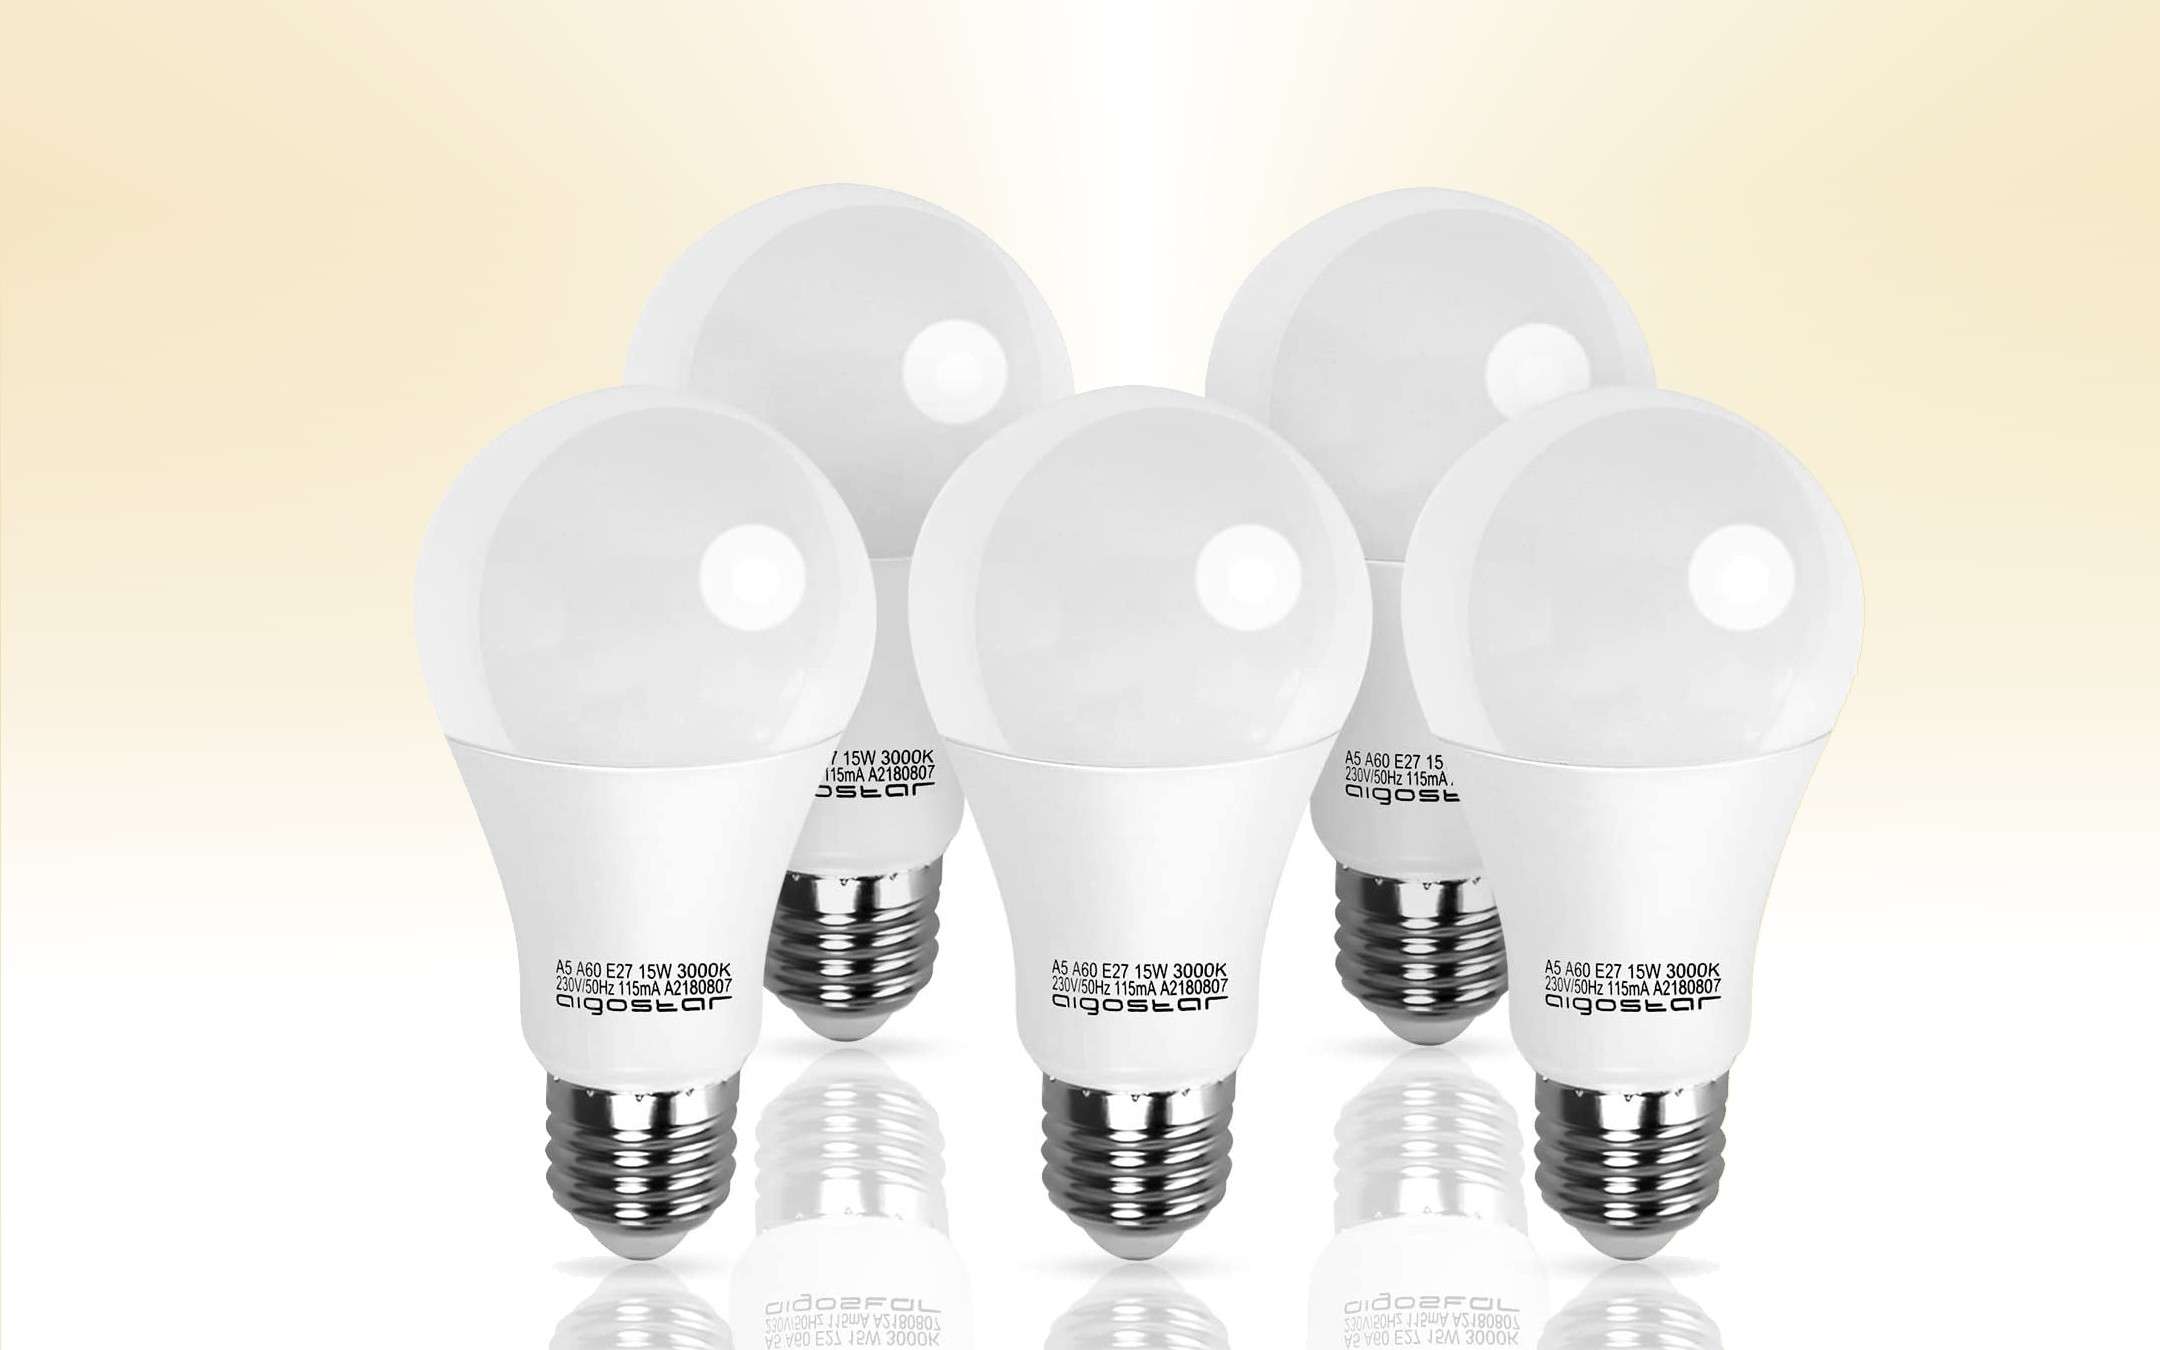 LED bulbs, discounts on each size